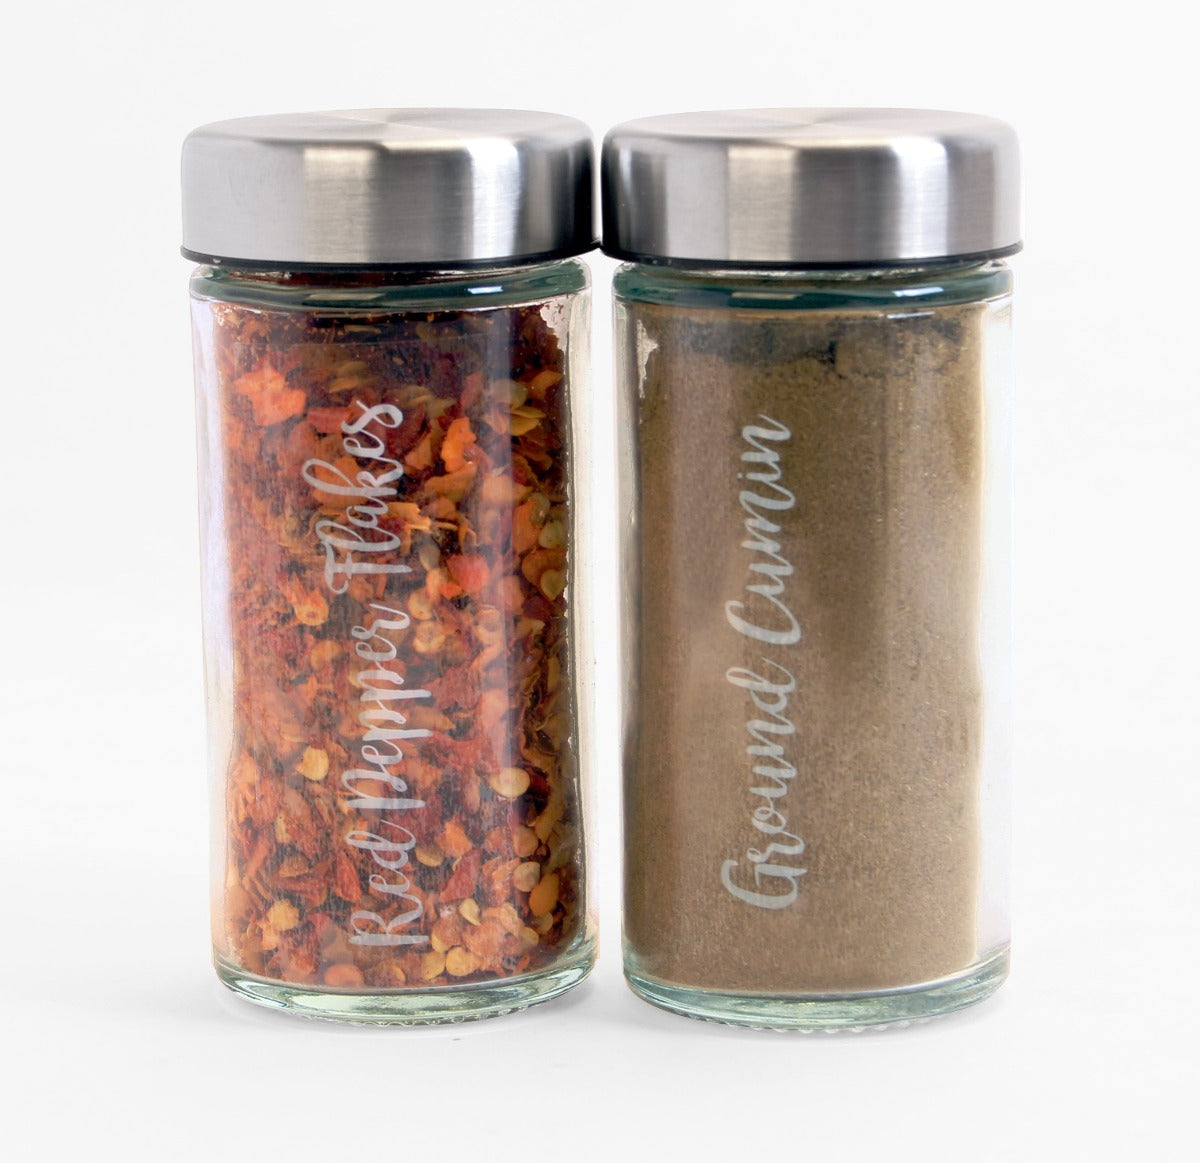 Spice Jar Sets - Tafts